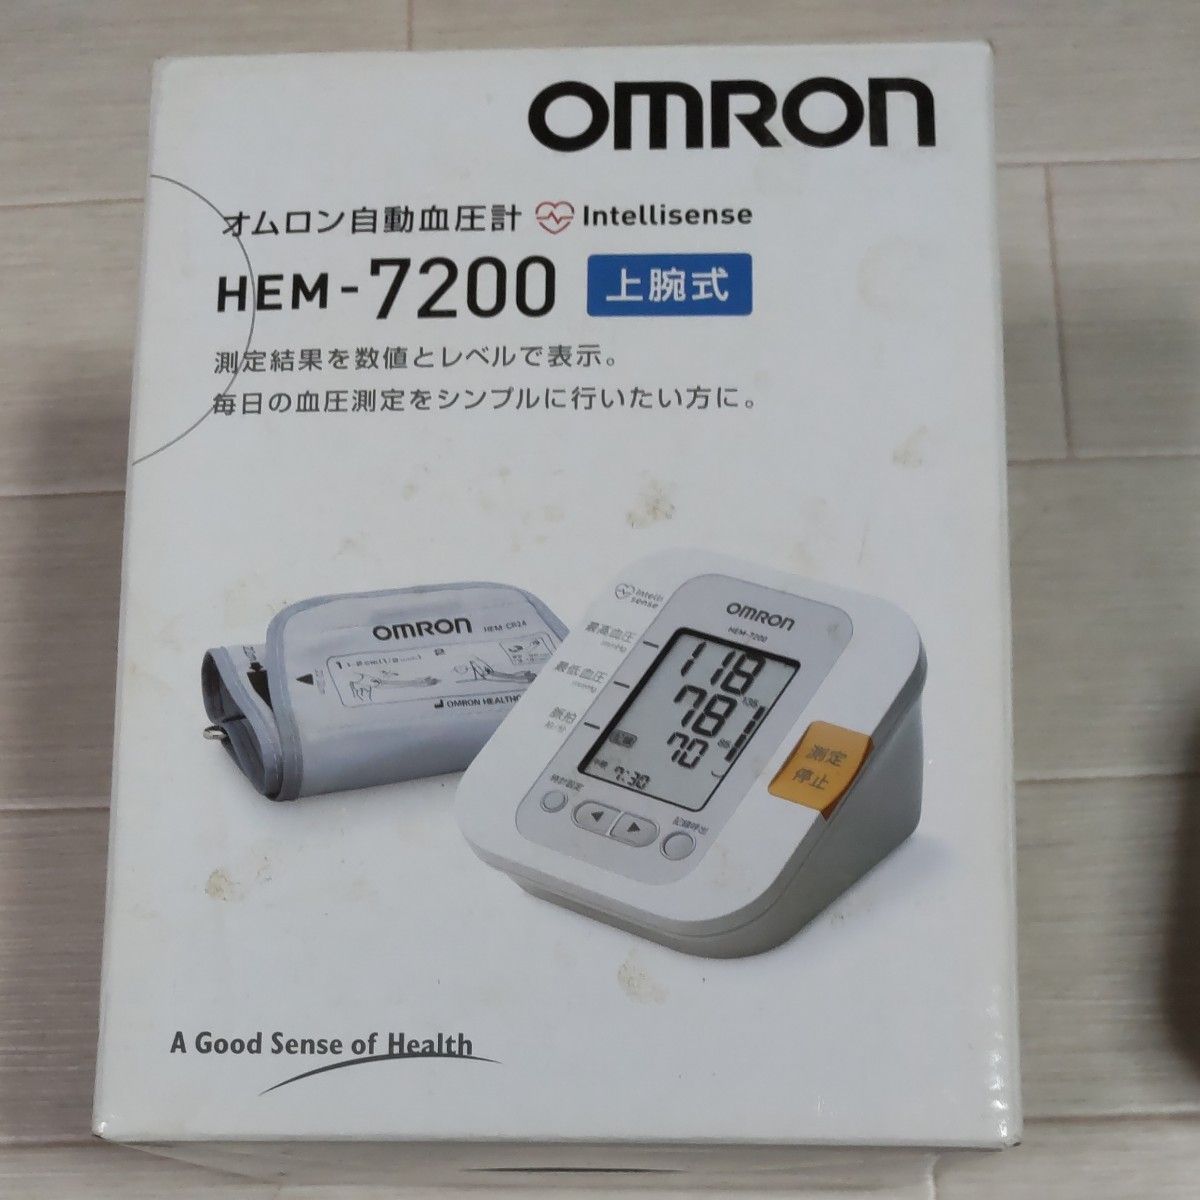 オムロン自動血圧計 HEM-7200  家で長期保管の中古品です。神経質な方はお控え下さい。値引き後の価格です。値引きご遠慮下さい